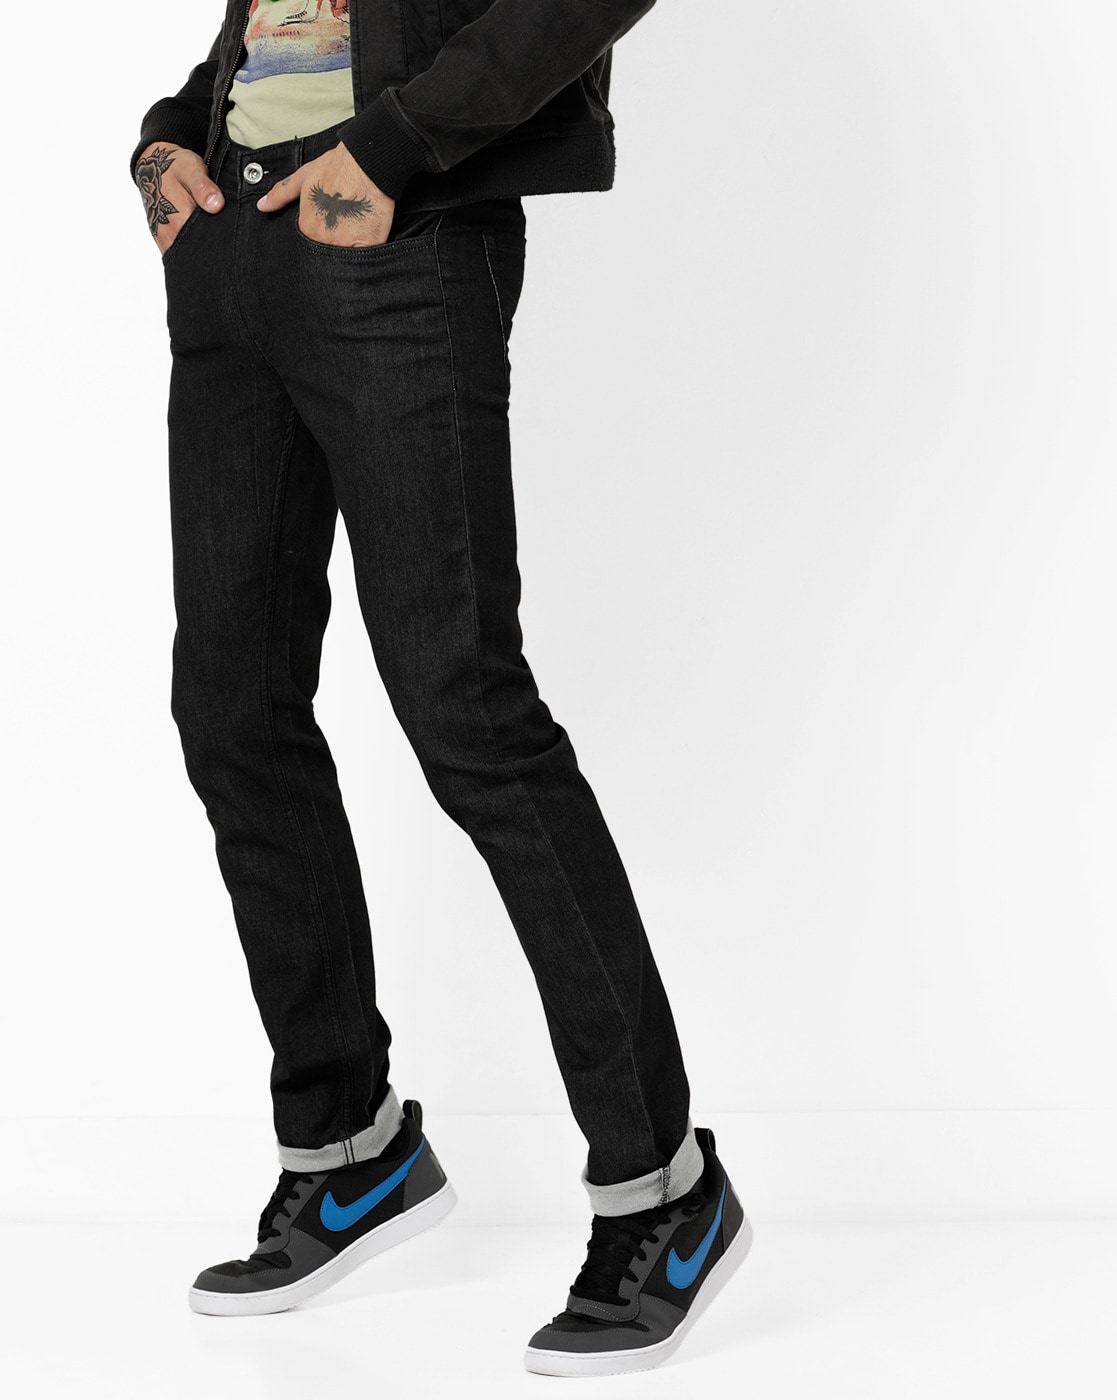 carbon black jeans online